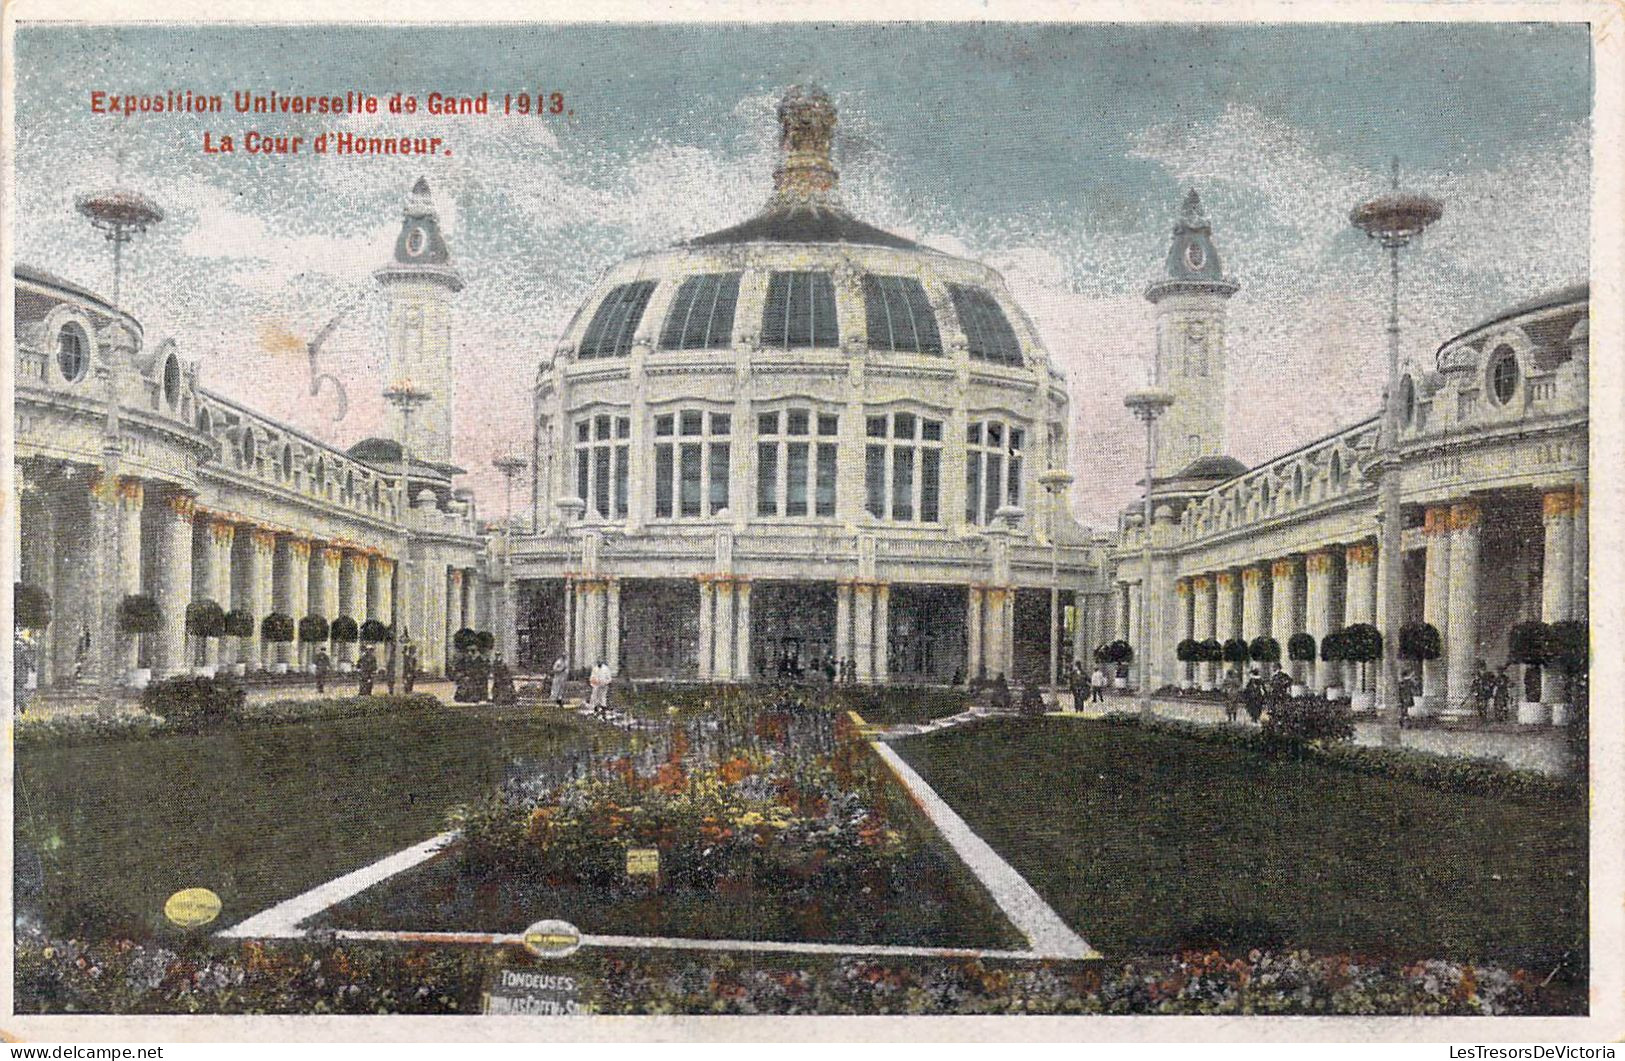 BELGIQUE - Gand - Exposition Universelle De Gand 1913 - Le Cour D'Honneur - Carte Postale Ancienne - Gent